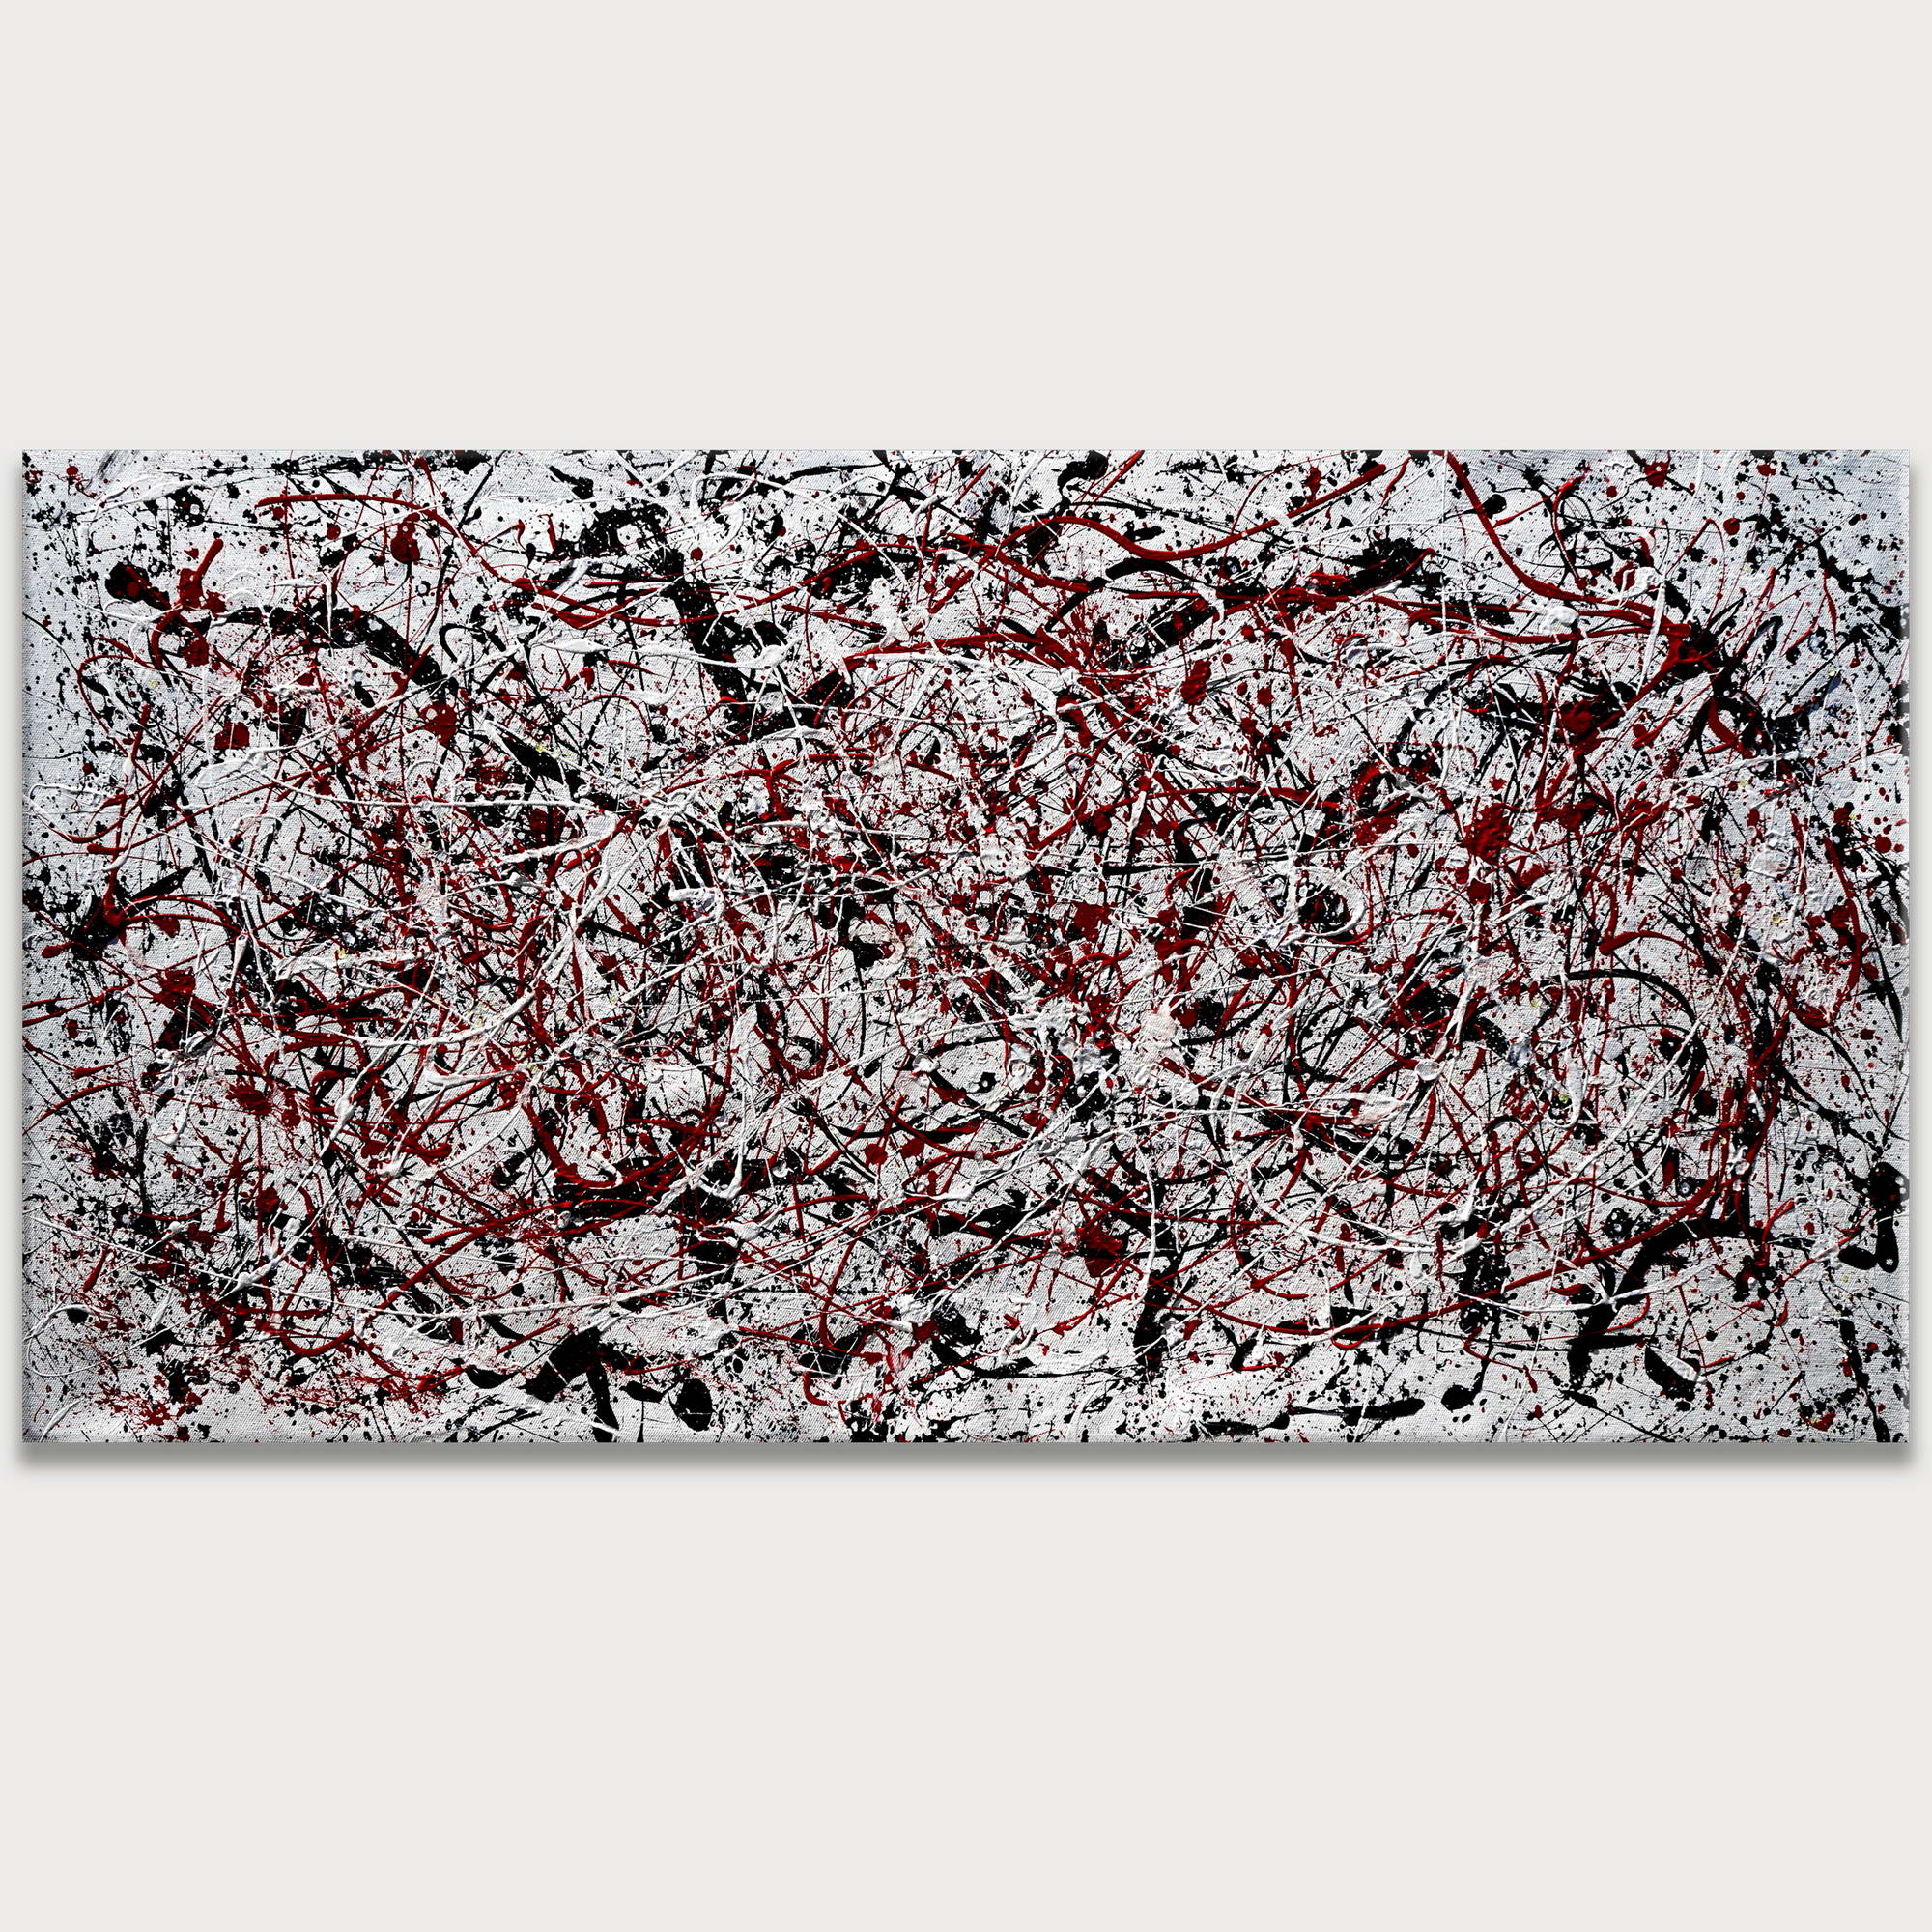 Dipinto a mano Astratto Rosso e Nero stile Pollock 75x150cm